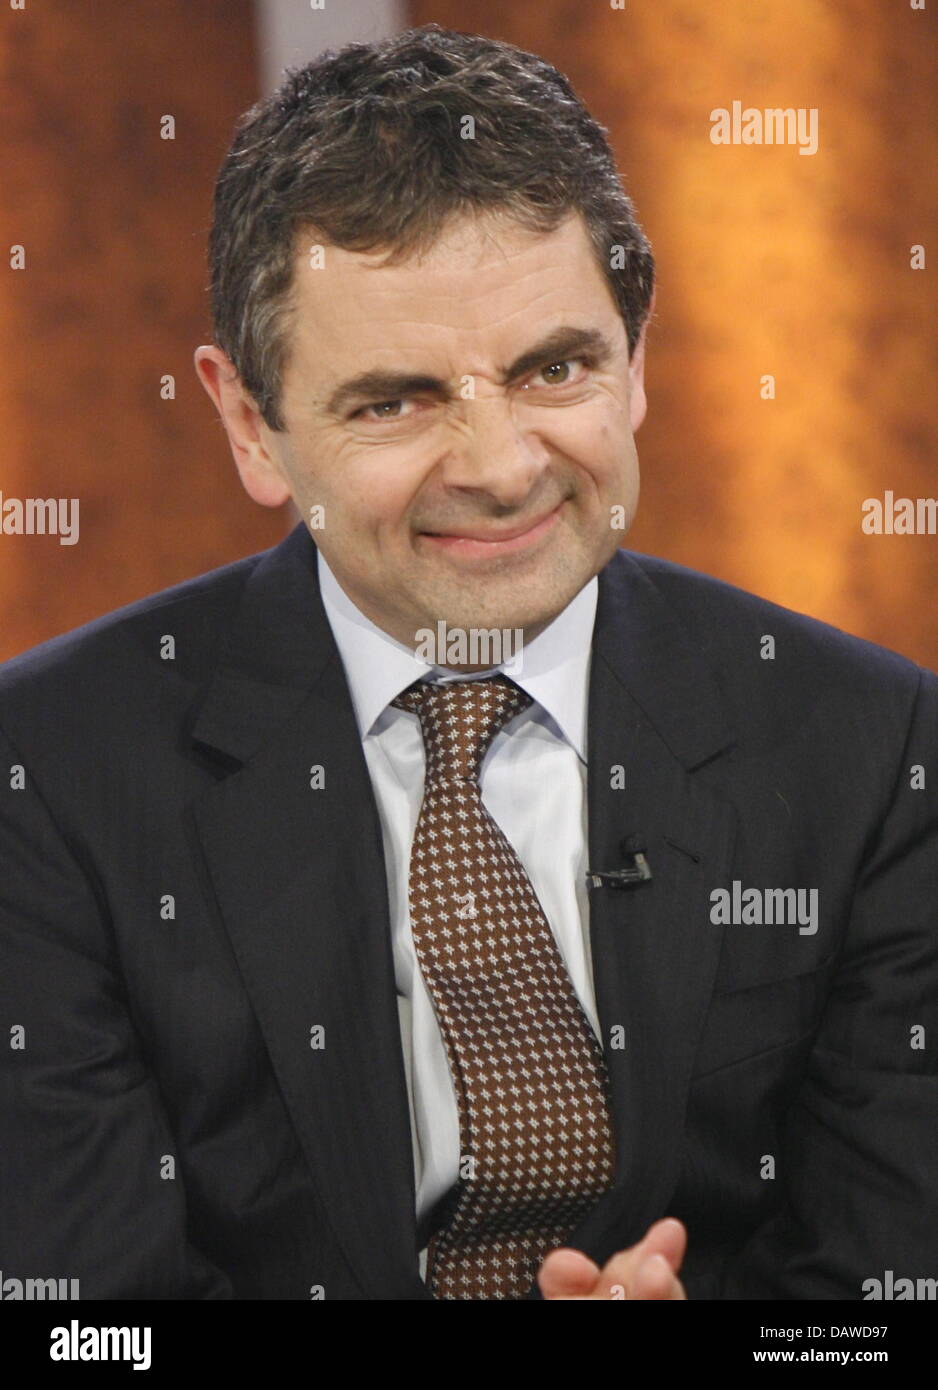 Britischer Schauspieler und Komiker Rowan Atkinson, alias Mister Bean, gezeigt in der ZDF - Fernsehsendung "Wetten, dass...?" (Na) in der Rothaus Arena in Freiburg im Breisgau, Samstag, 31. März 2007. Foto: Rolf Haid Stockfoto